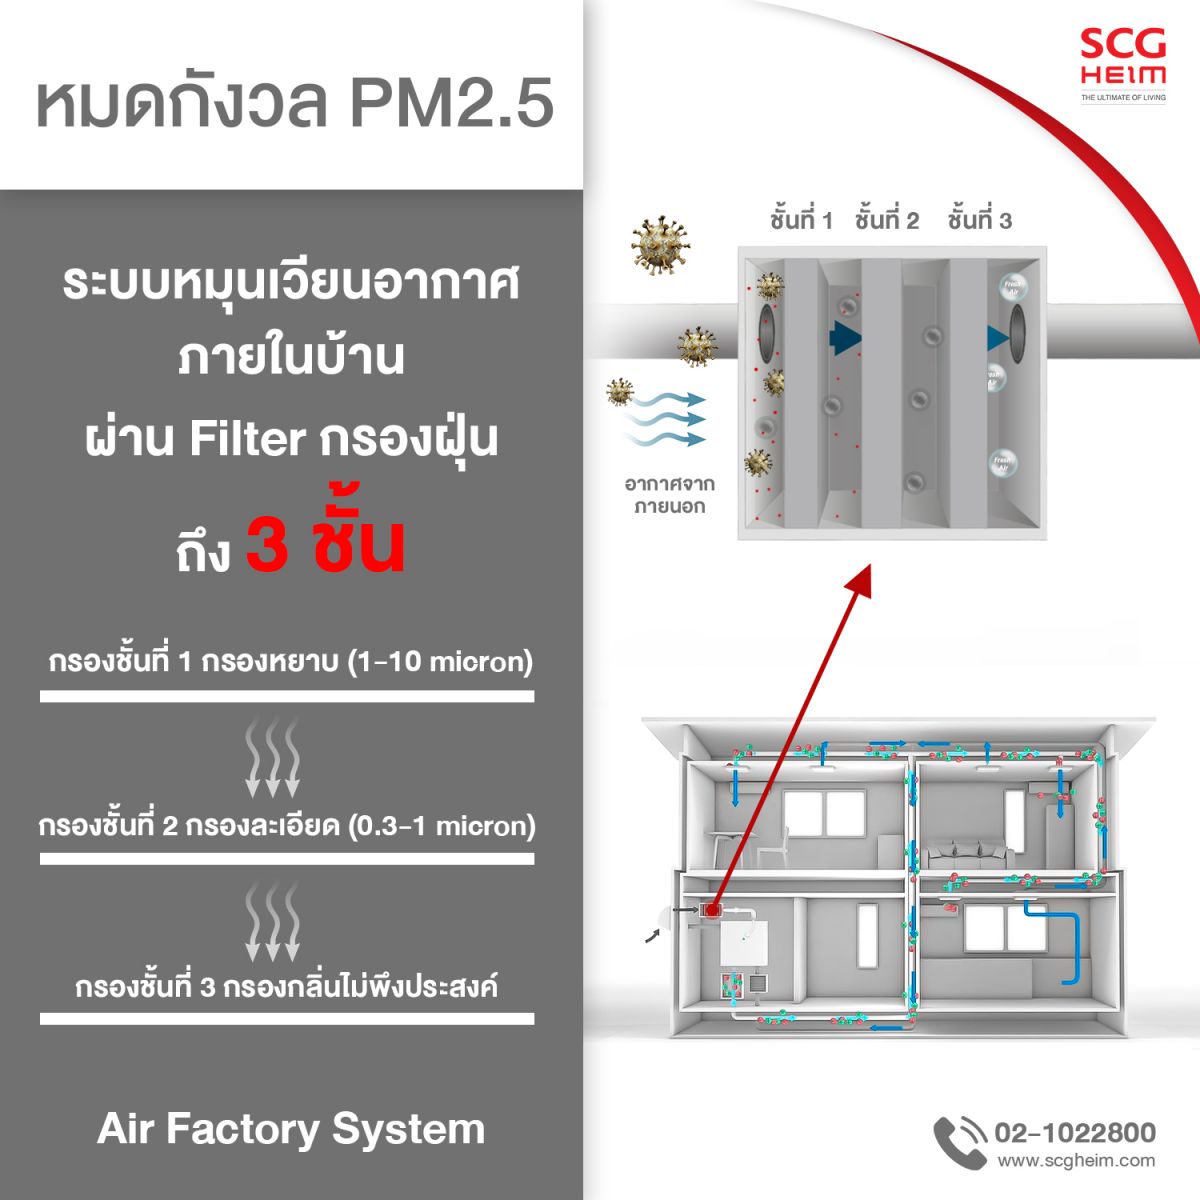 ระบบ Air Factory จาก SCG HEIM